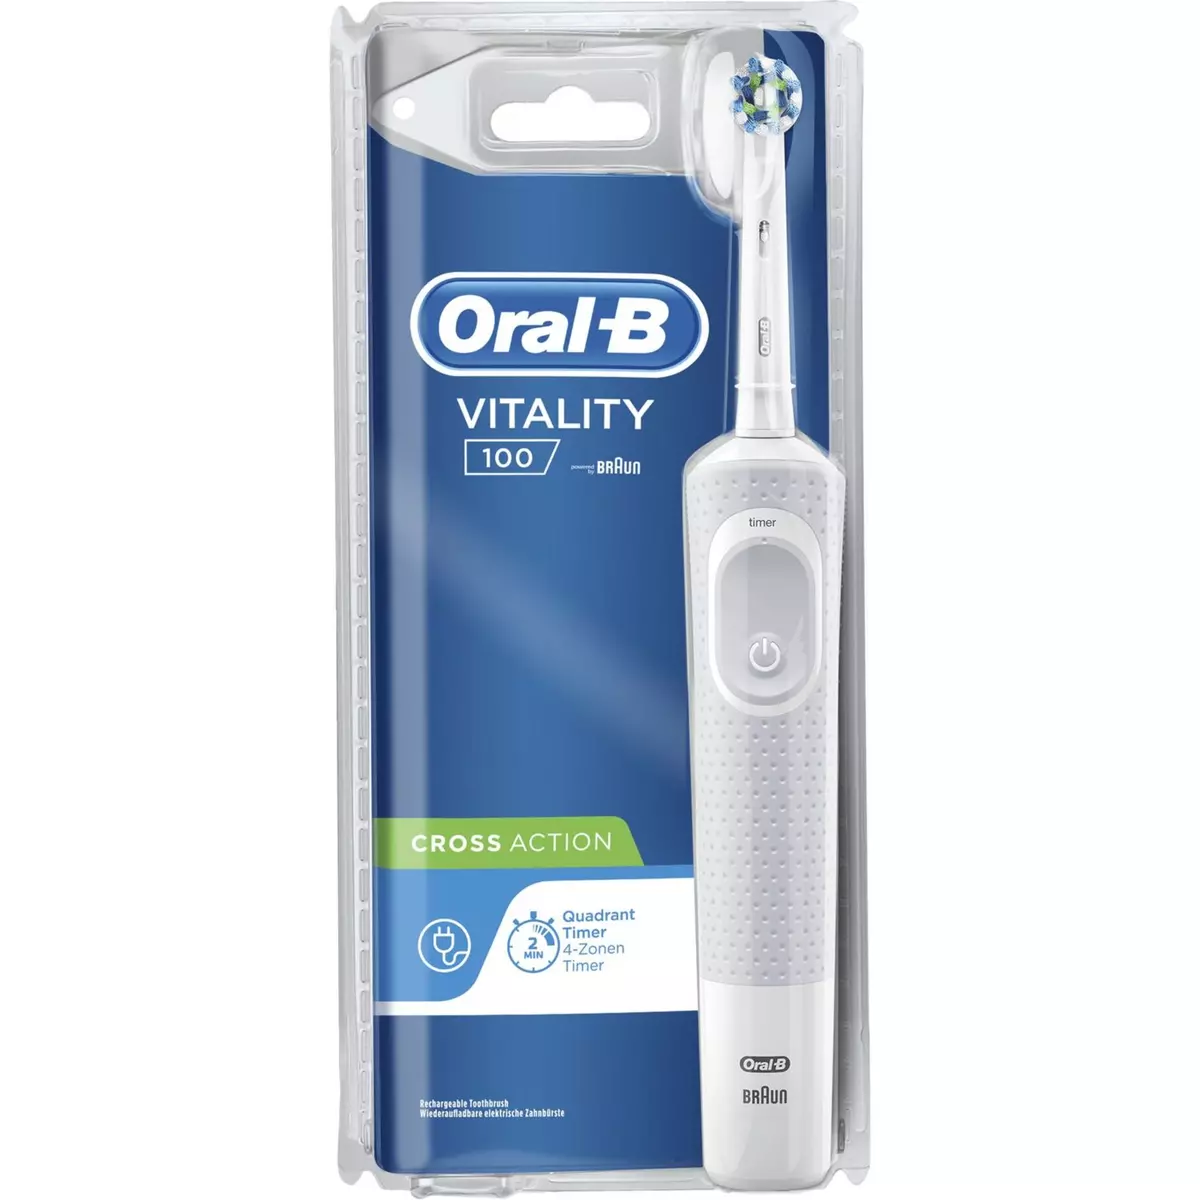 ORAL-B Brosse à dents électrique vitality100 cross action 1 brosse